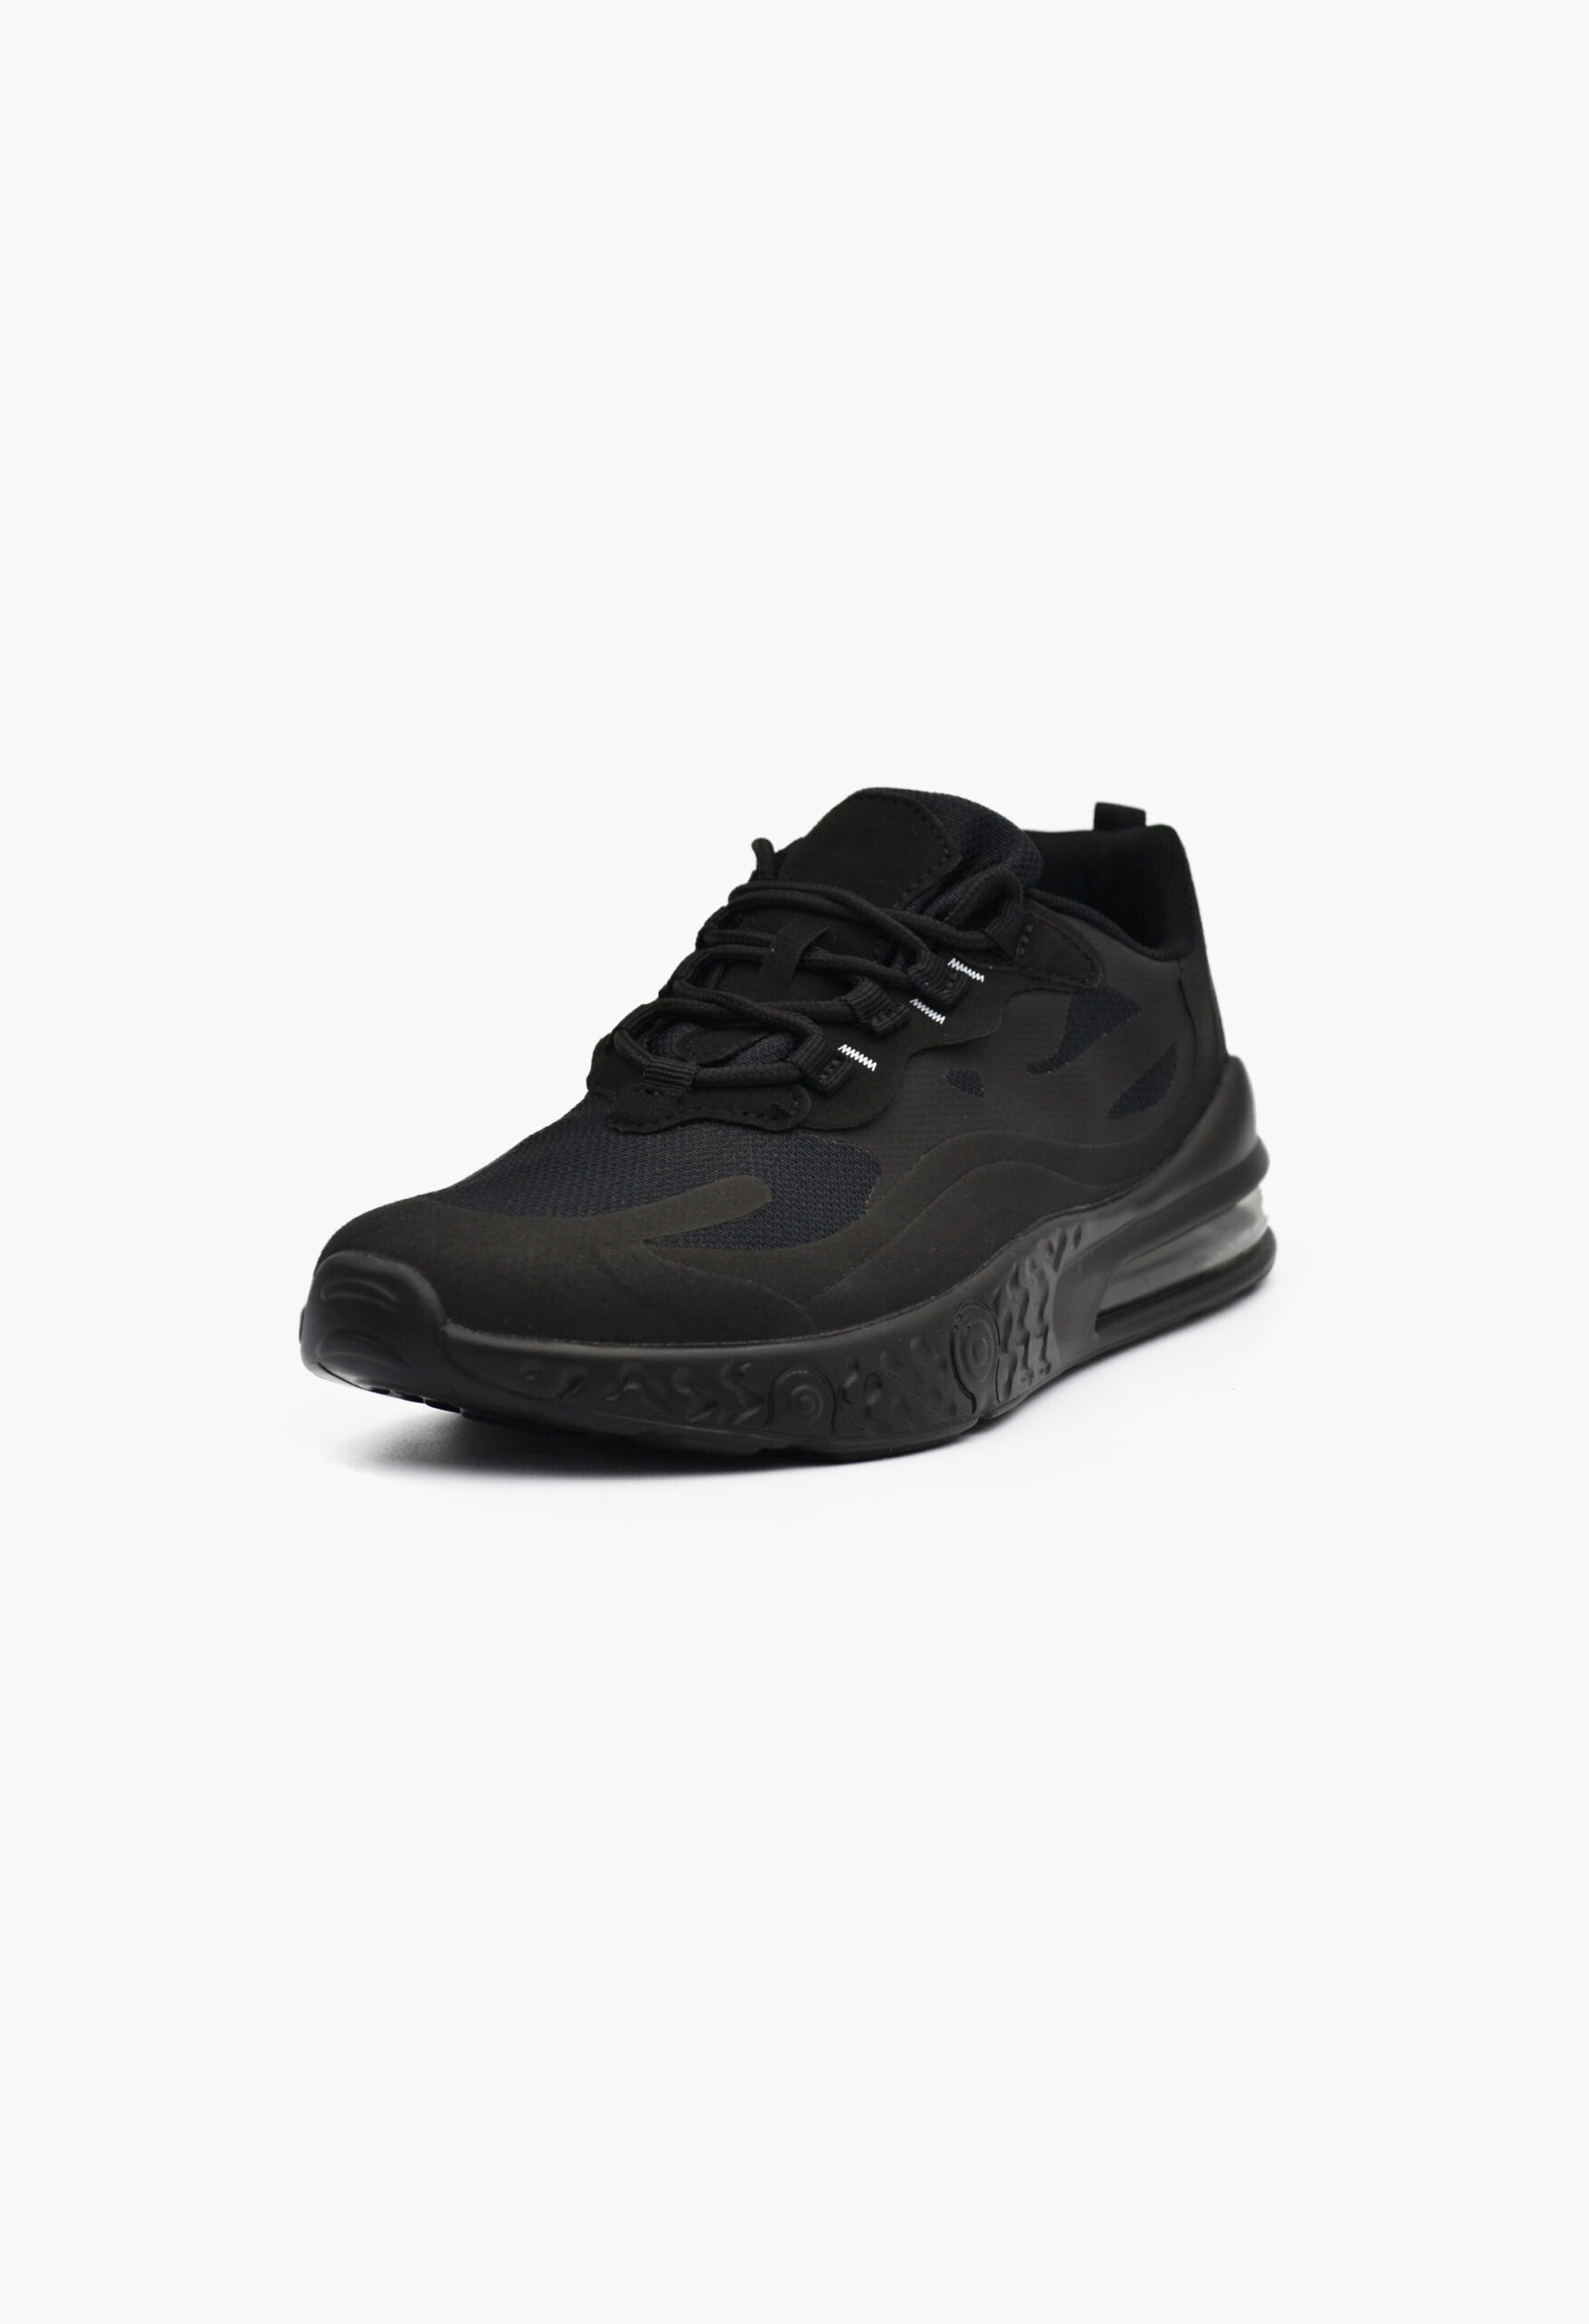 Αθλητικά Παπούτσια για Τρέξιμο Μαύρο / SD0169-all black Γυναικεία Αθλητικά και Sneakers joya.gr